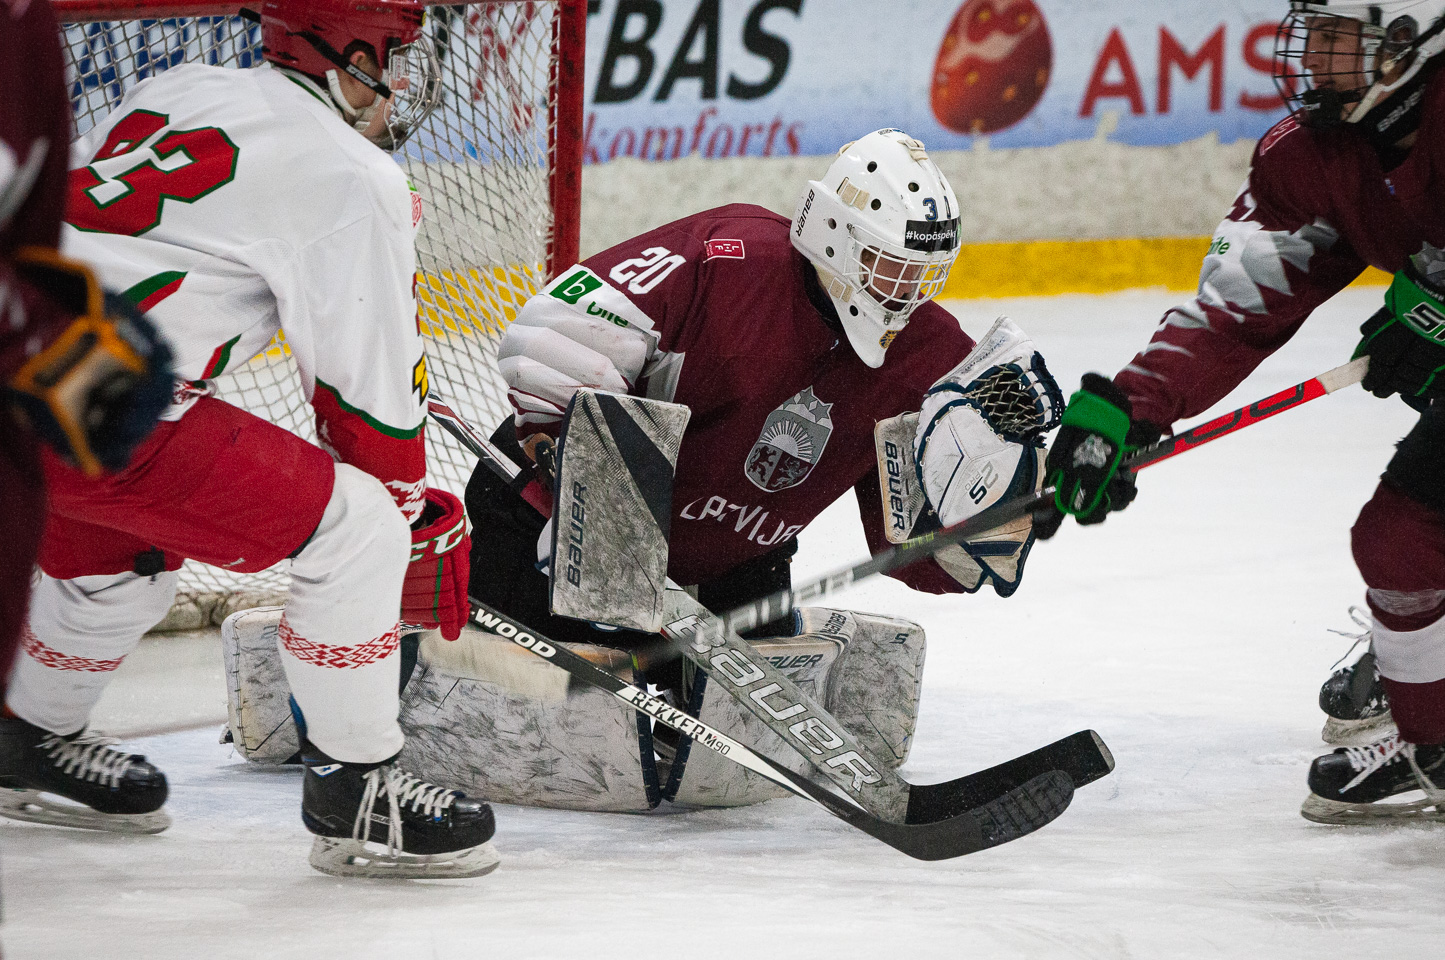 Trīs nāciju pārbaudes turnīra spēle starp Latvijas U-18 un Baltkrievijas U-18 valstsvienībā Jelgavas ledus hallē 2019. gada 14. decembrī. | Foto: Ruslans Antropovs / rusantro.com